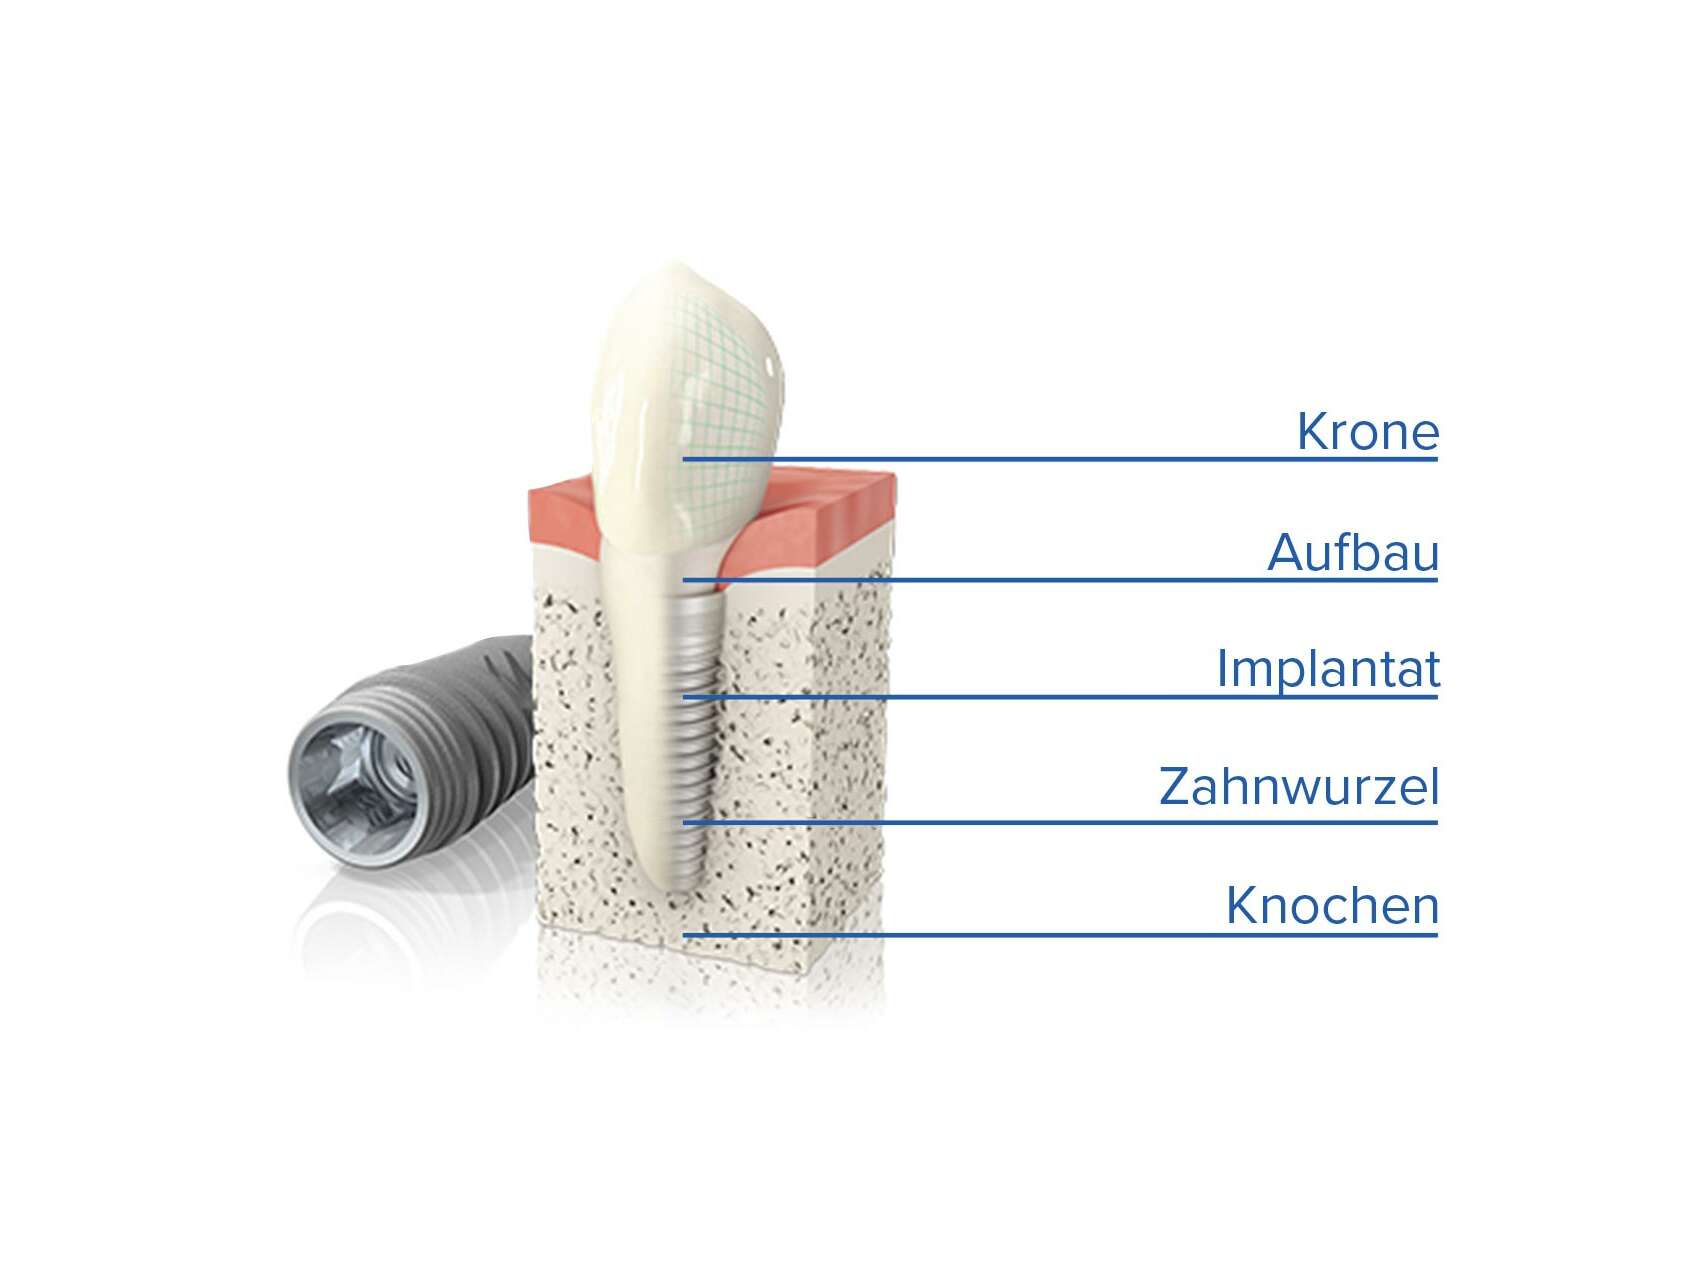 Einsatz eines Zahn-Implantats von unten nach oben: Knochen, Zahnwurzel, Implantat, Aufbau, Krone